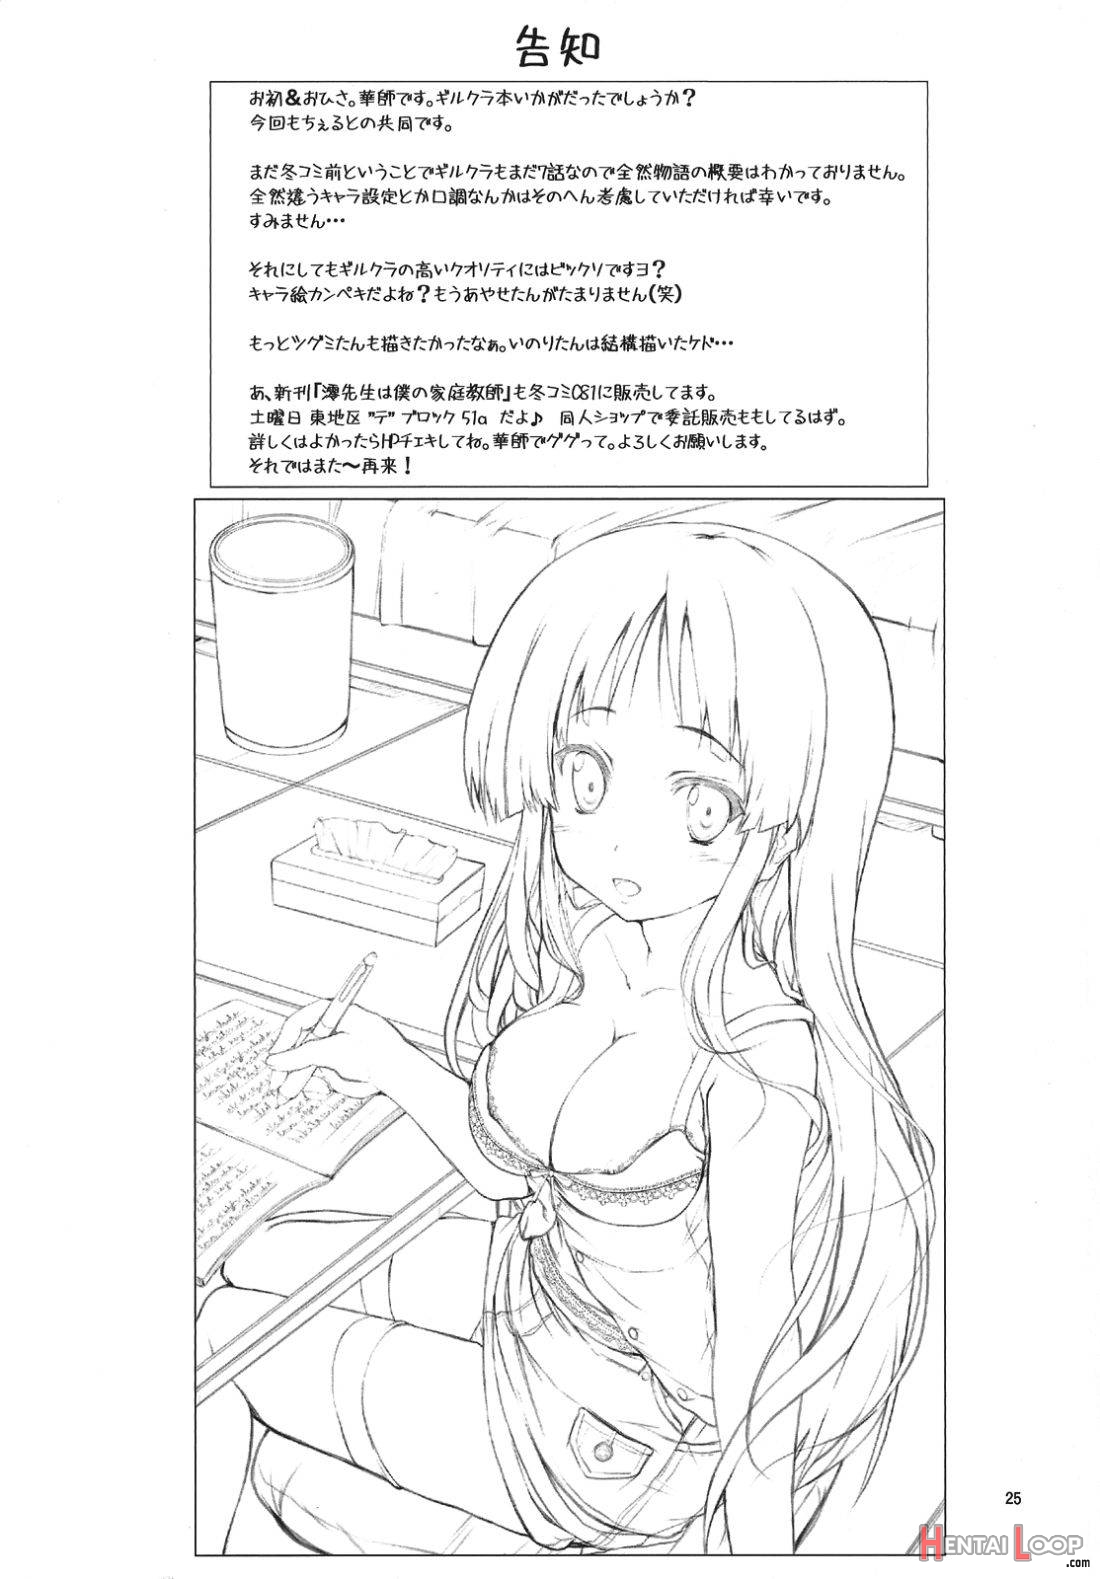 Inori-chan wa Kirawaremono? page 22